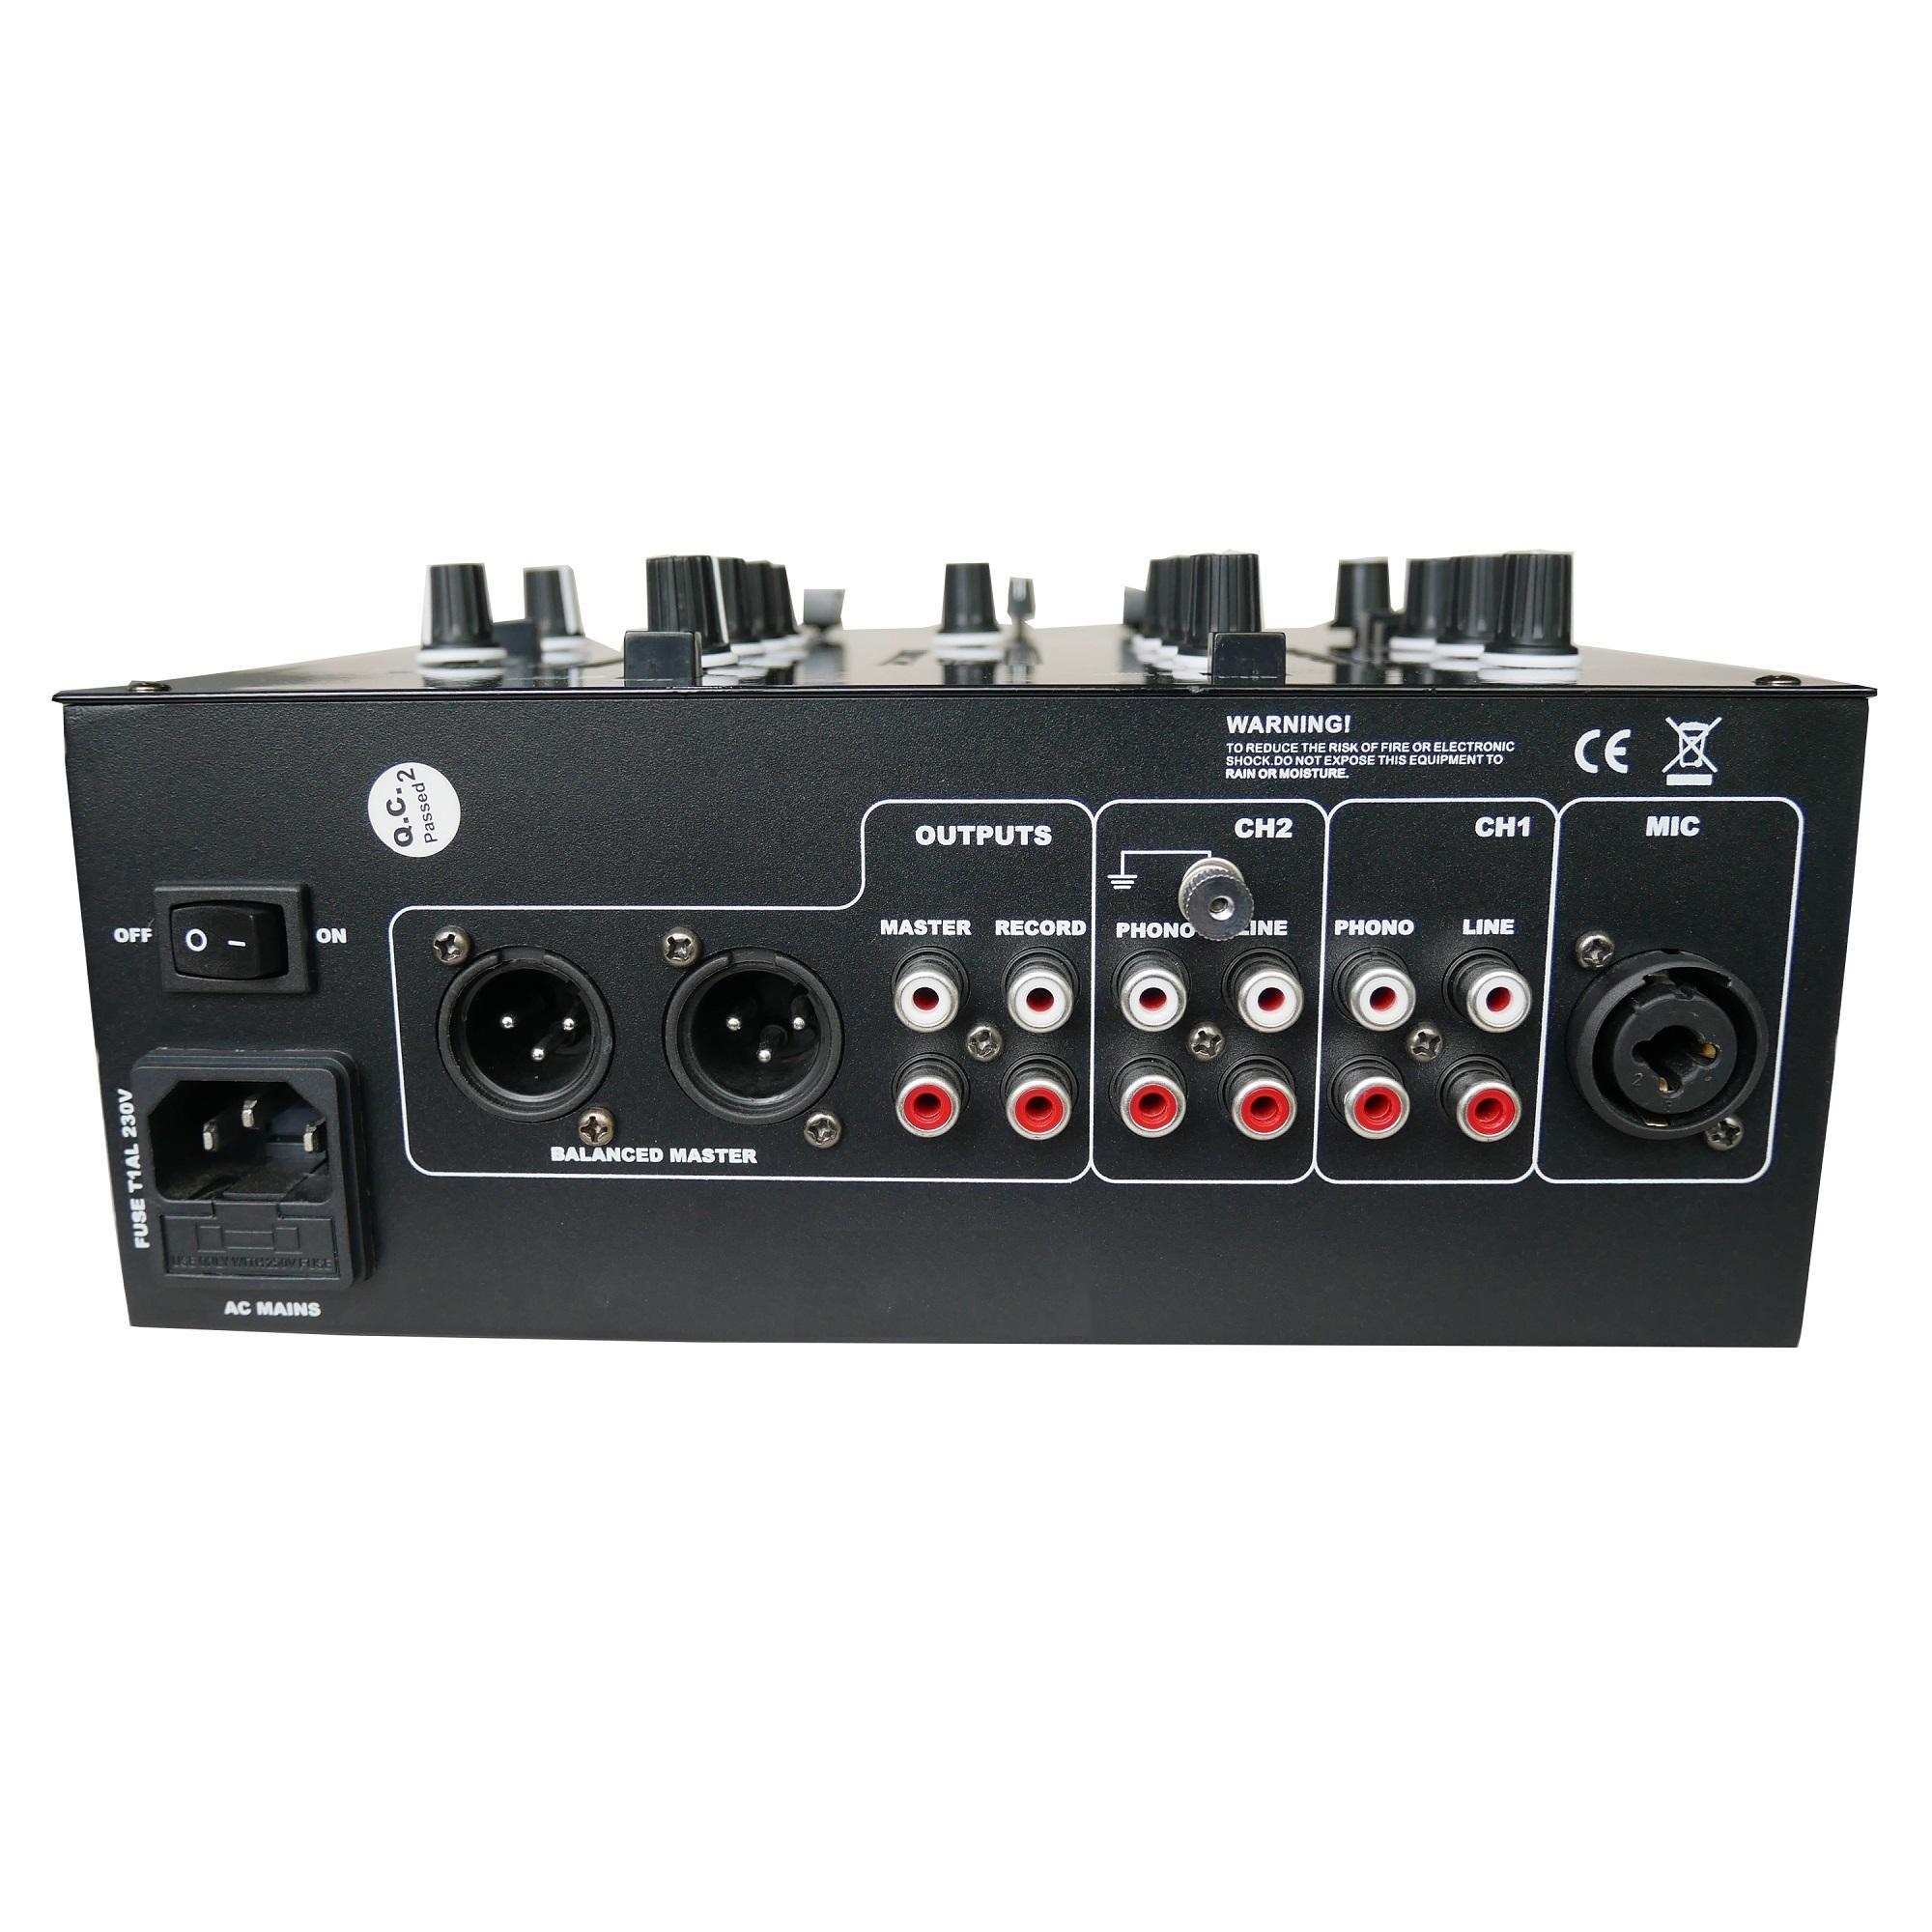 DJM52 Mezclador de DJ battel de 2 canales